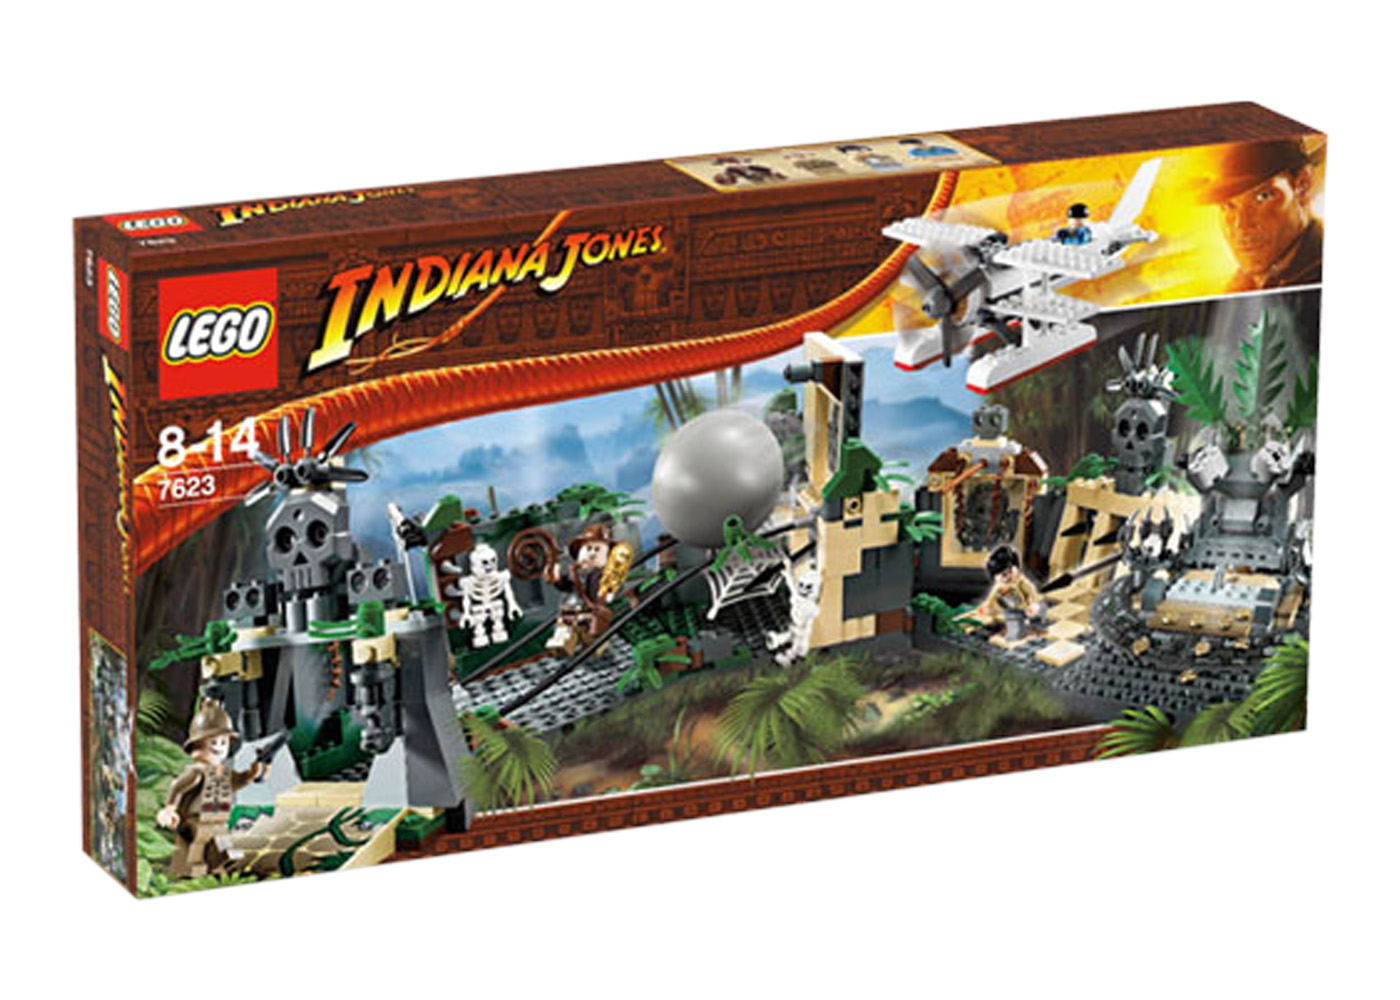 LEGO The Hobbit Barrel Escape Set 79004 - US